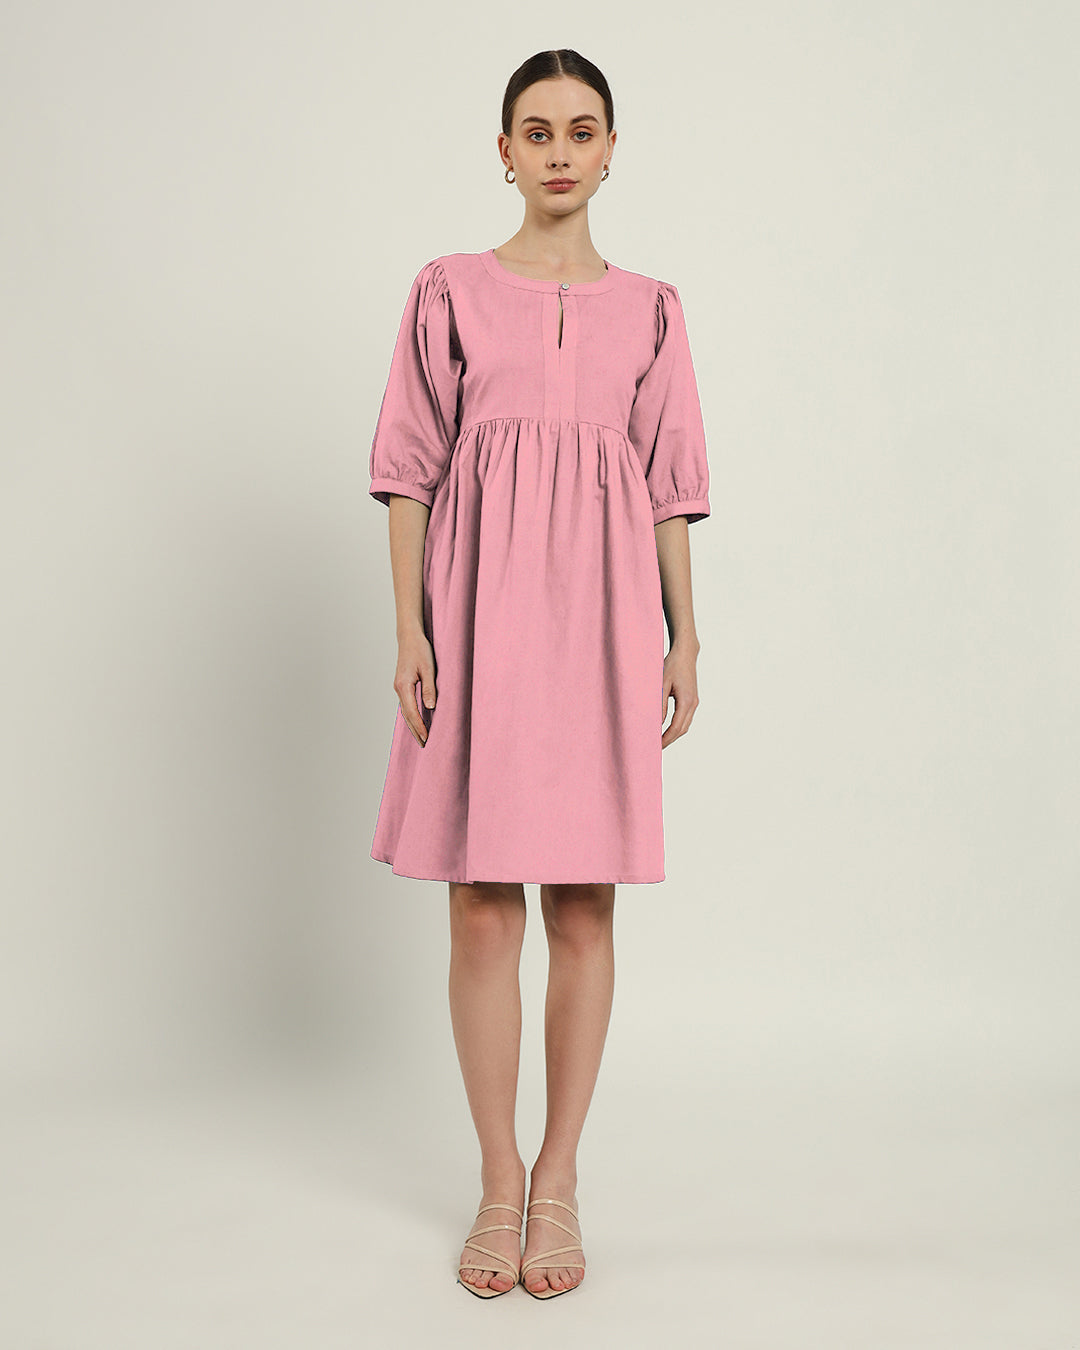 The Aira Fondant Pink Dress